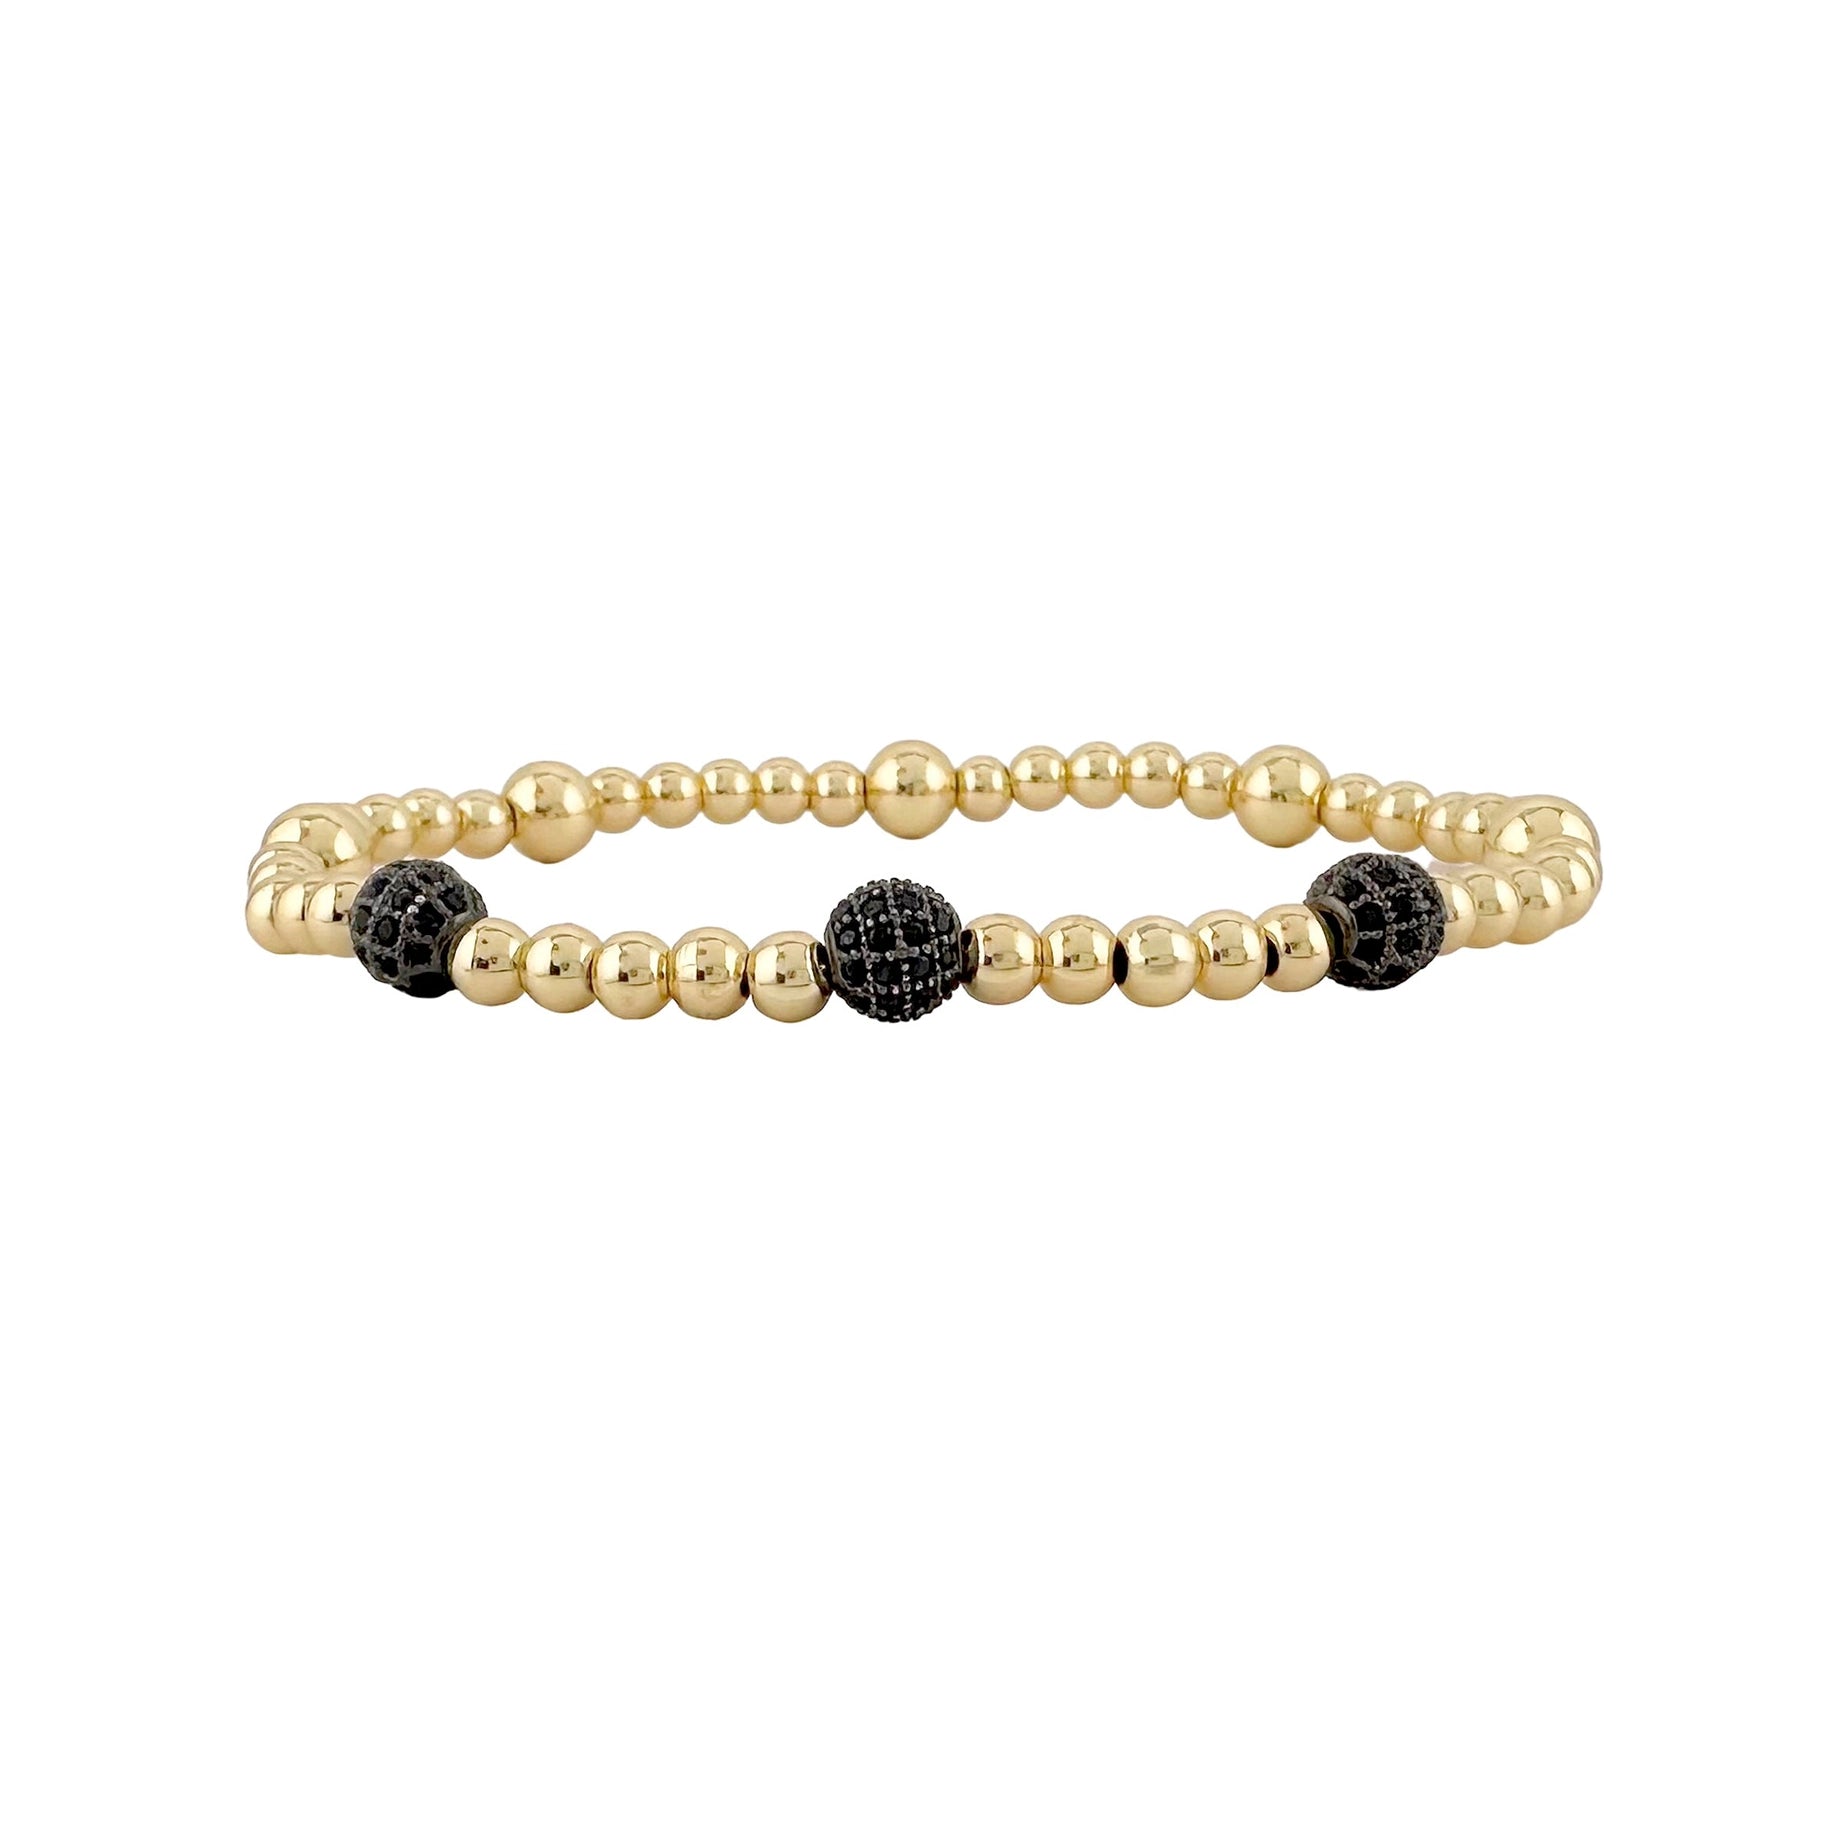 Gold/Black pave bracelet